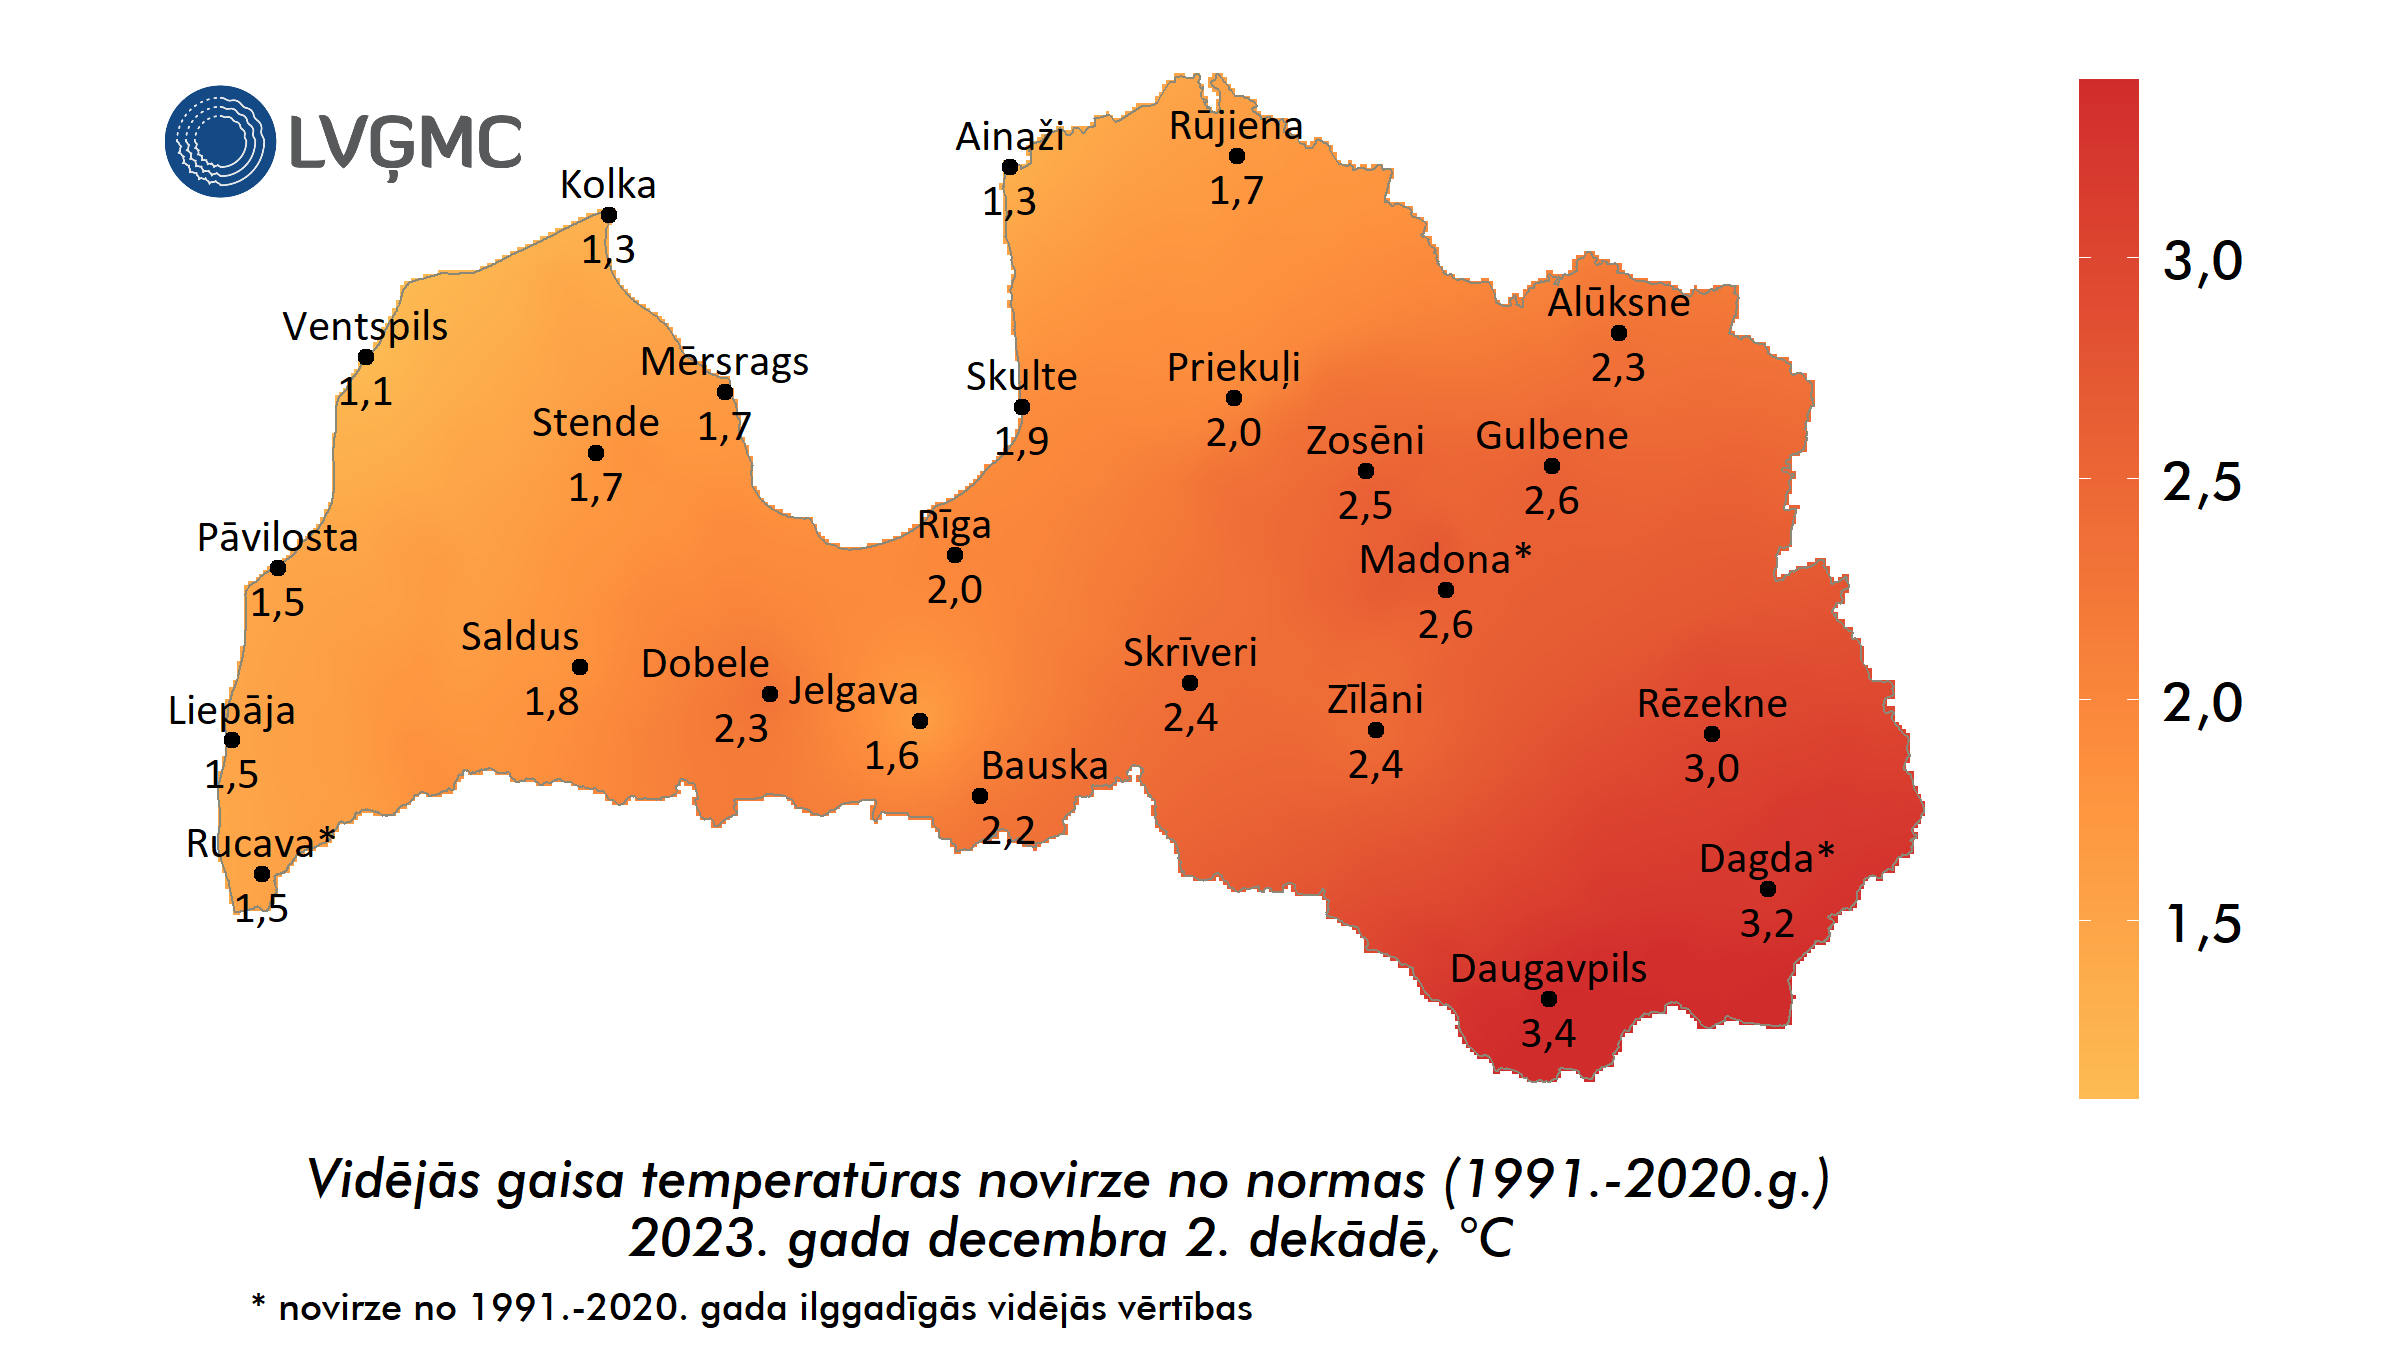 Vidējās gaisa temperatūras novirze no normas 2023. gada decembra 2. dekādē, °C 